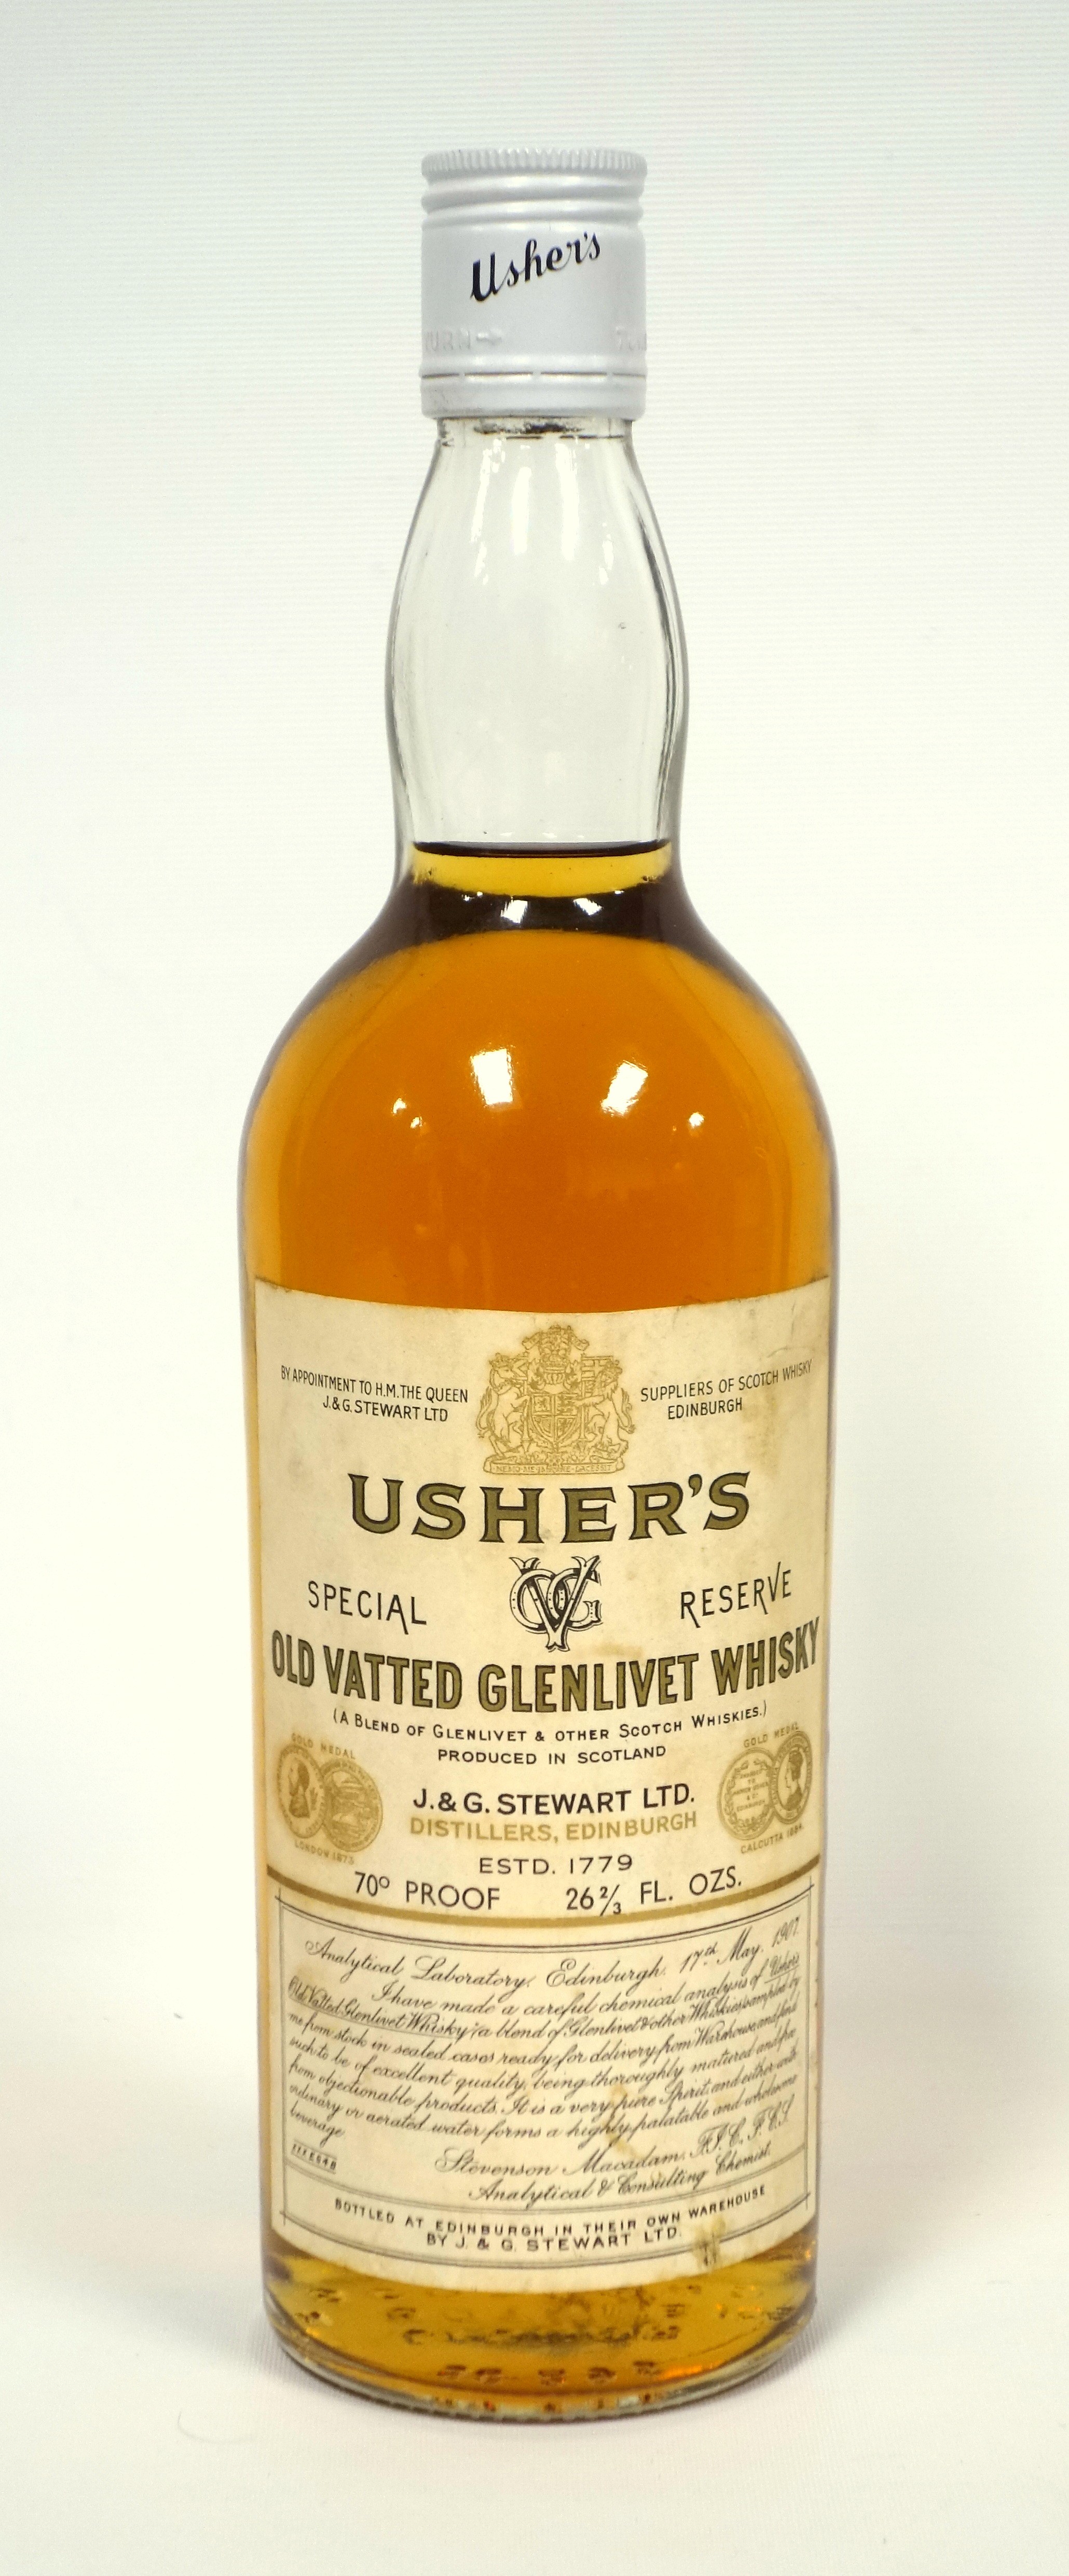 1 bottle Usher's Special Reserve Old Vatted Glenlivet Whisky, 70% proof